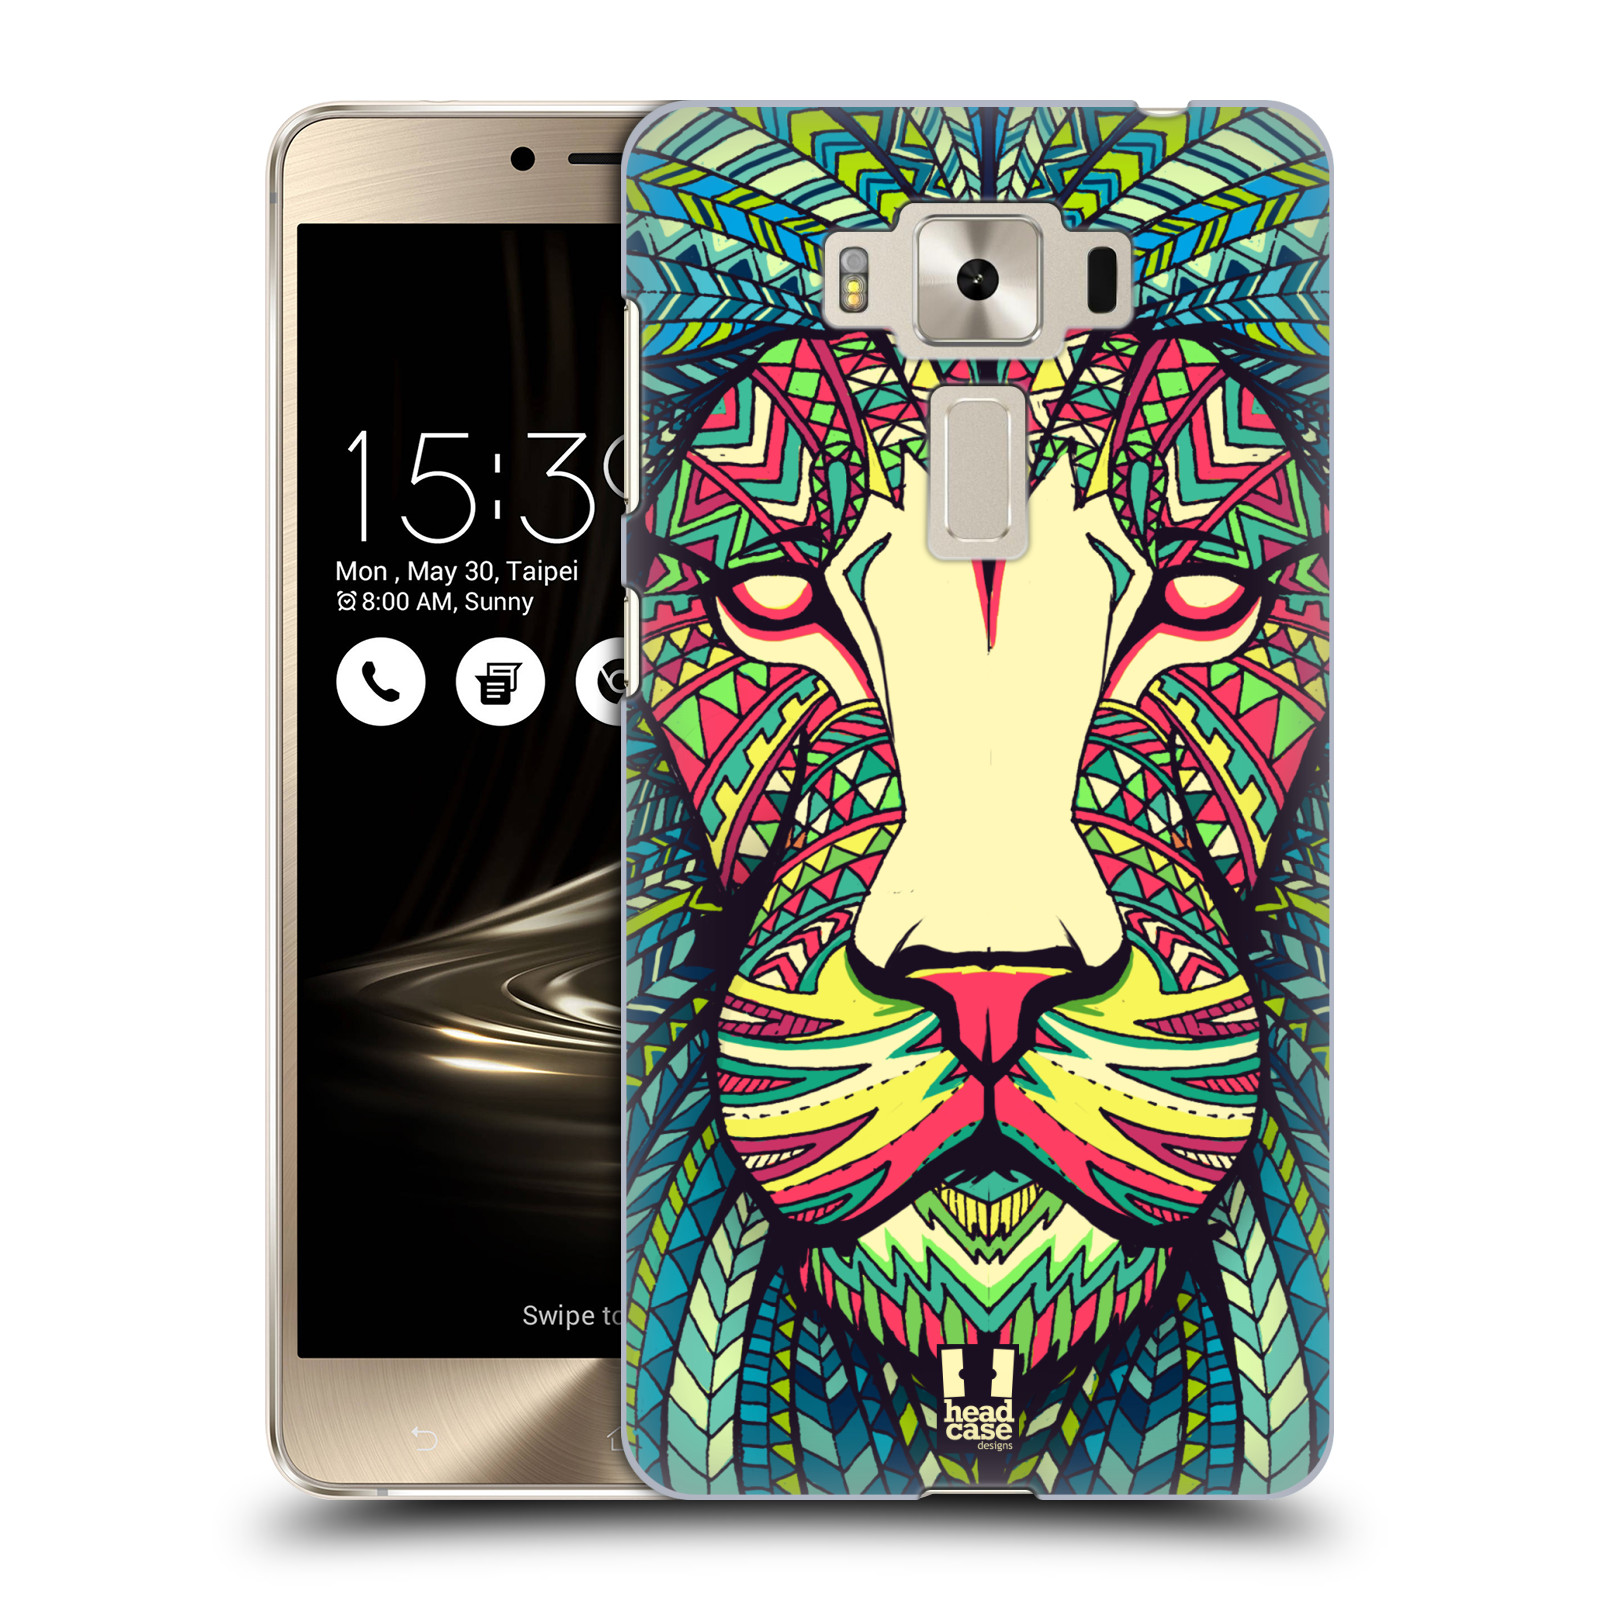 HEAD CASE plastový obal na mobil Asus Zenfone 3 DELUXE ZS550KL vzor Aztécký motiv zvíře lev